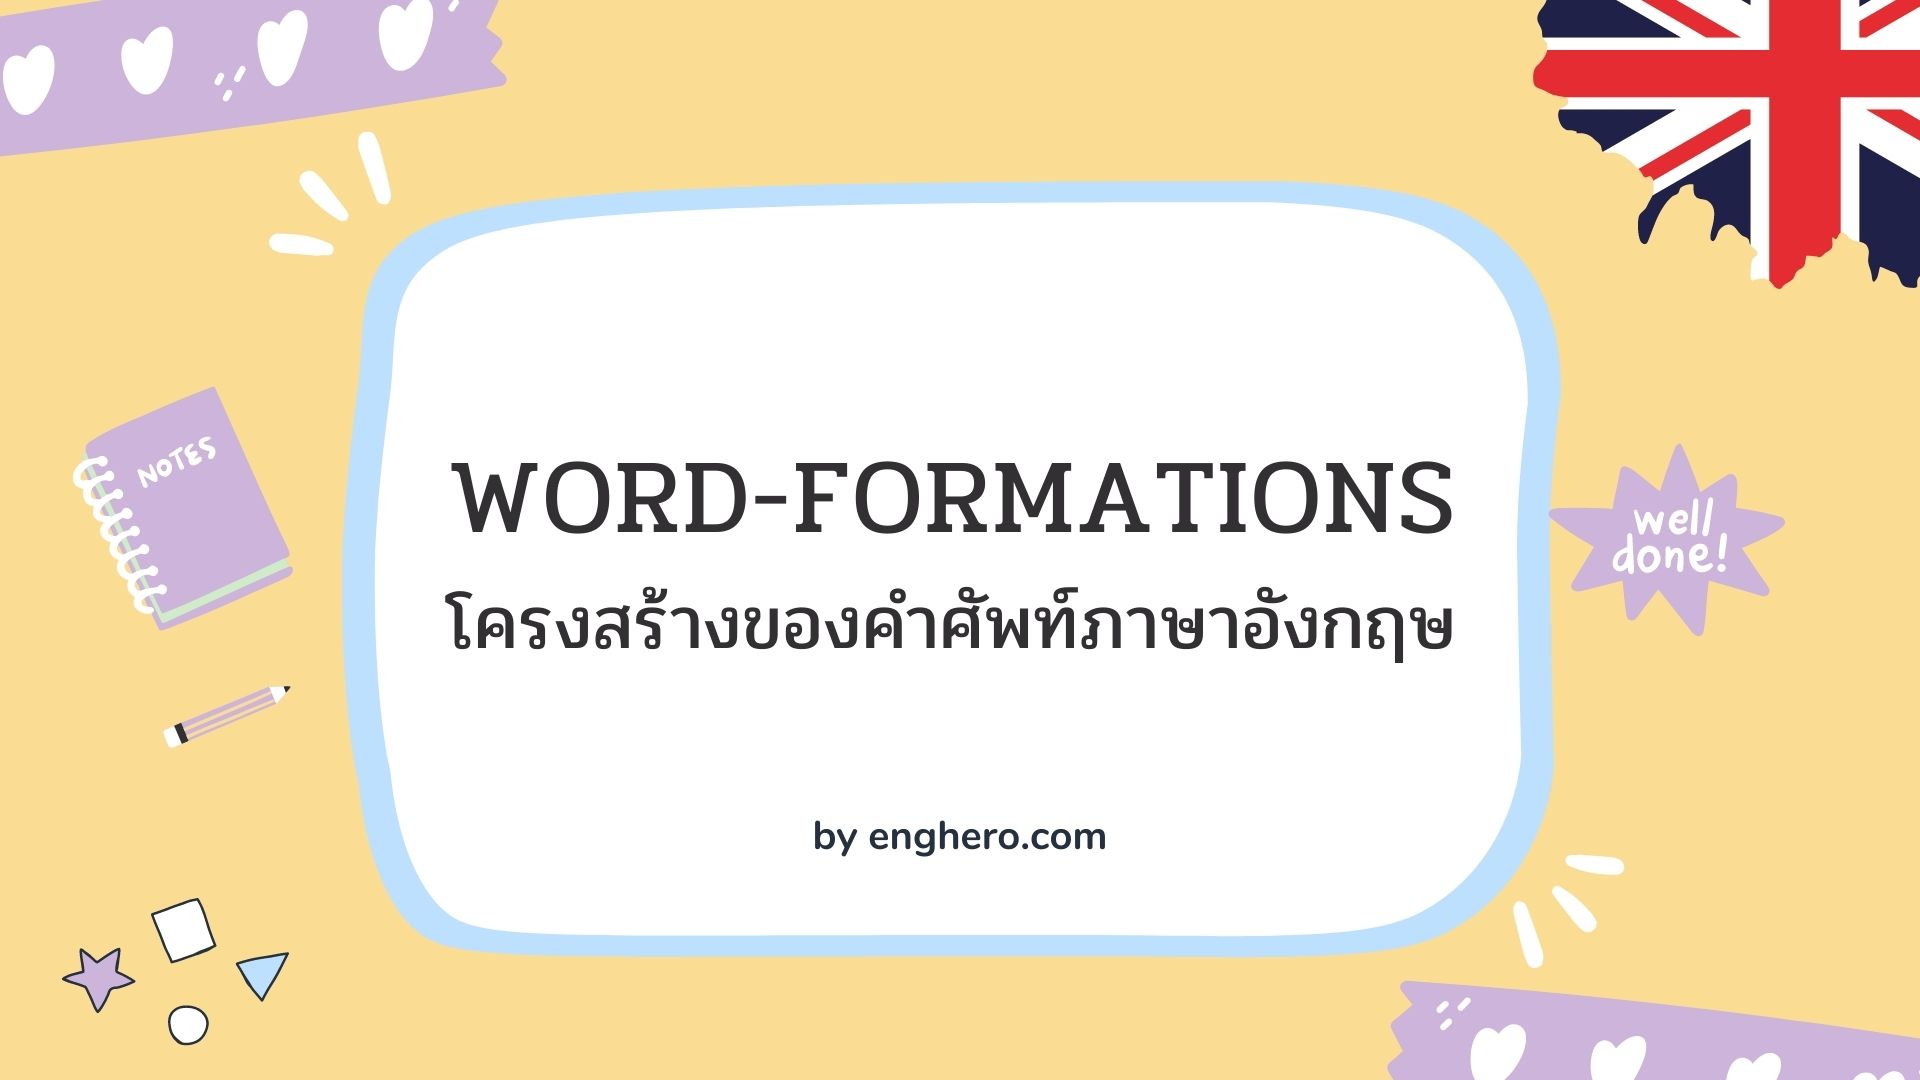 Word-formations: Prefix, Suffix & Root : โครงสร้างของคำศัพท์ภาษาอังกฤษ